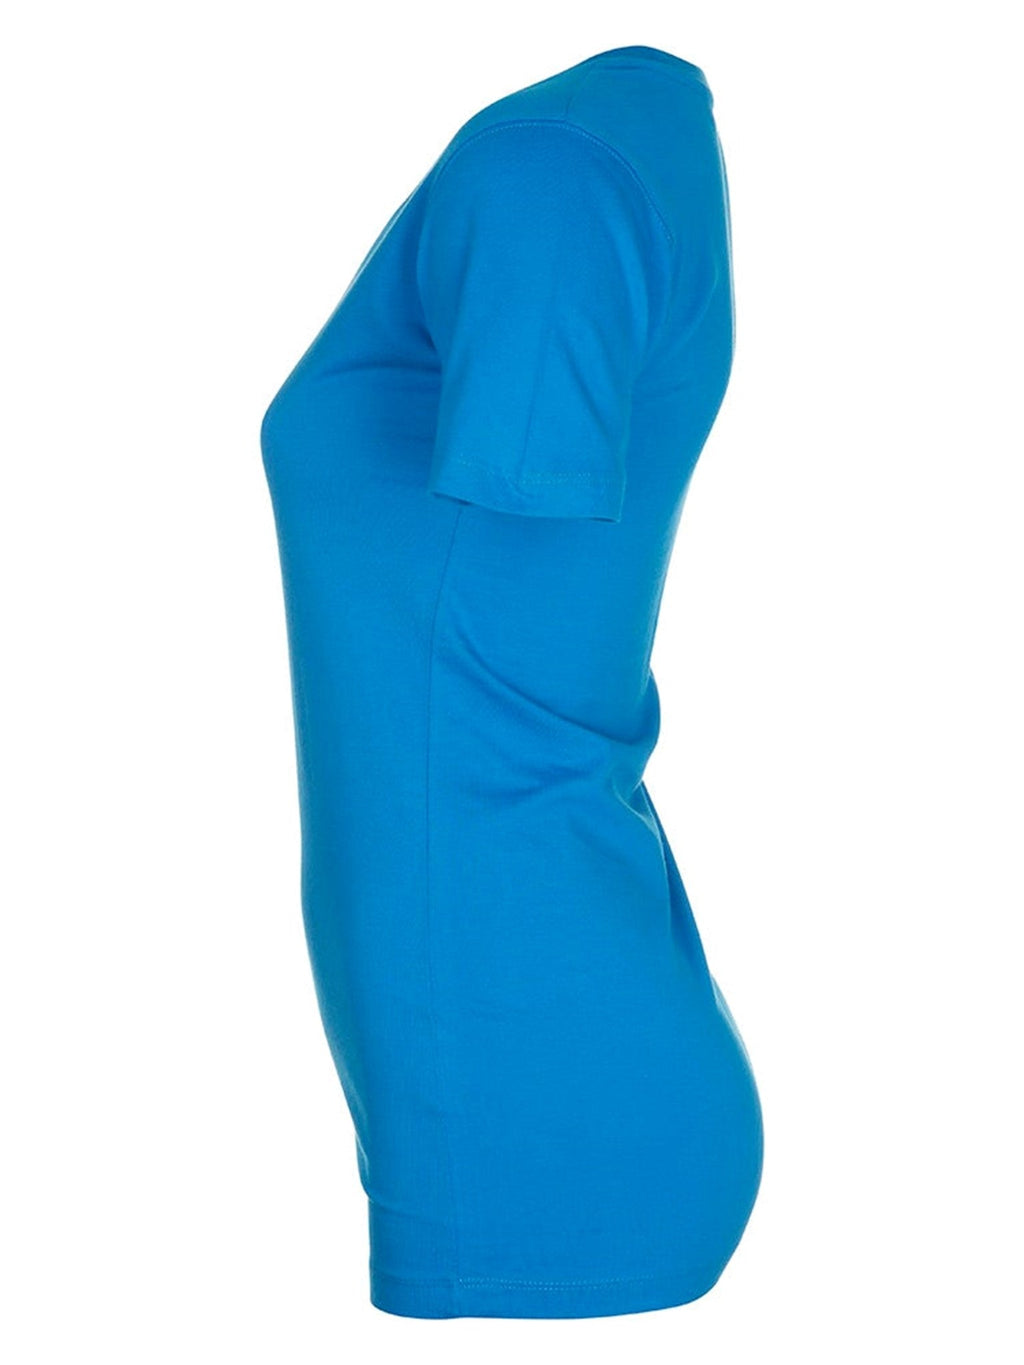 Zliehané tričko-Torquoise Blue